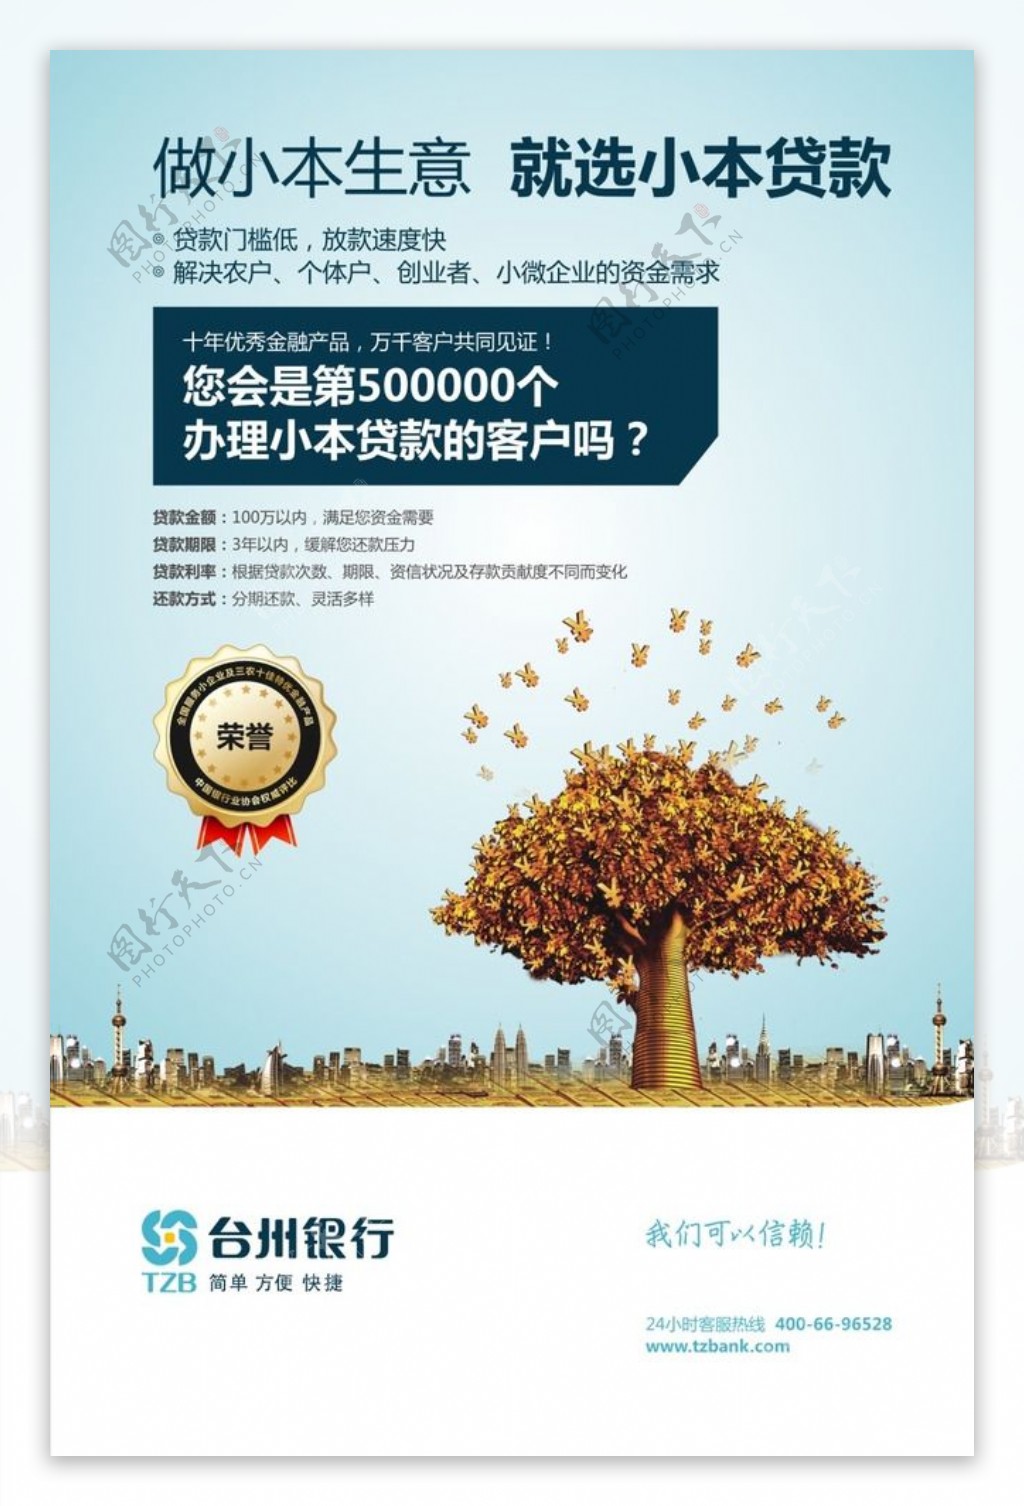 台州银行灯箱广告图片